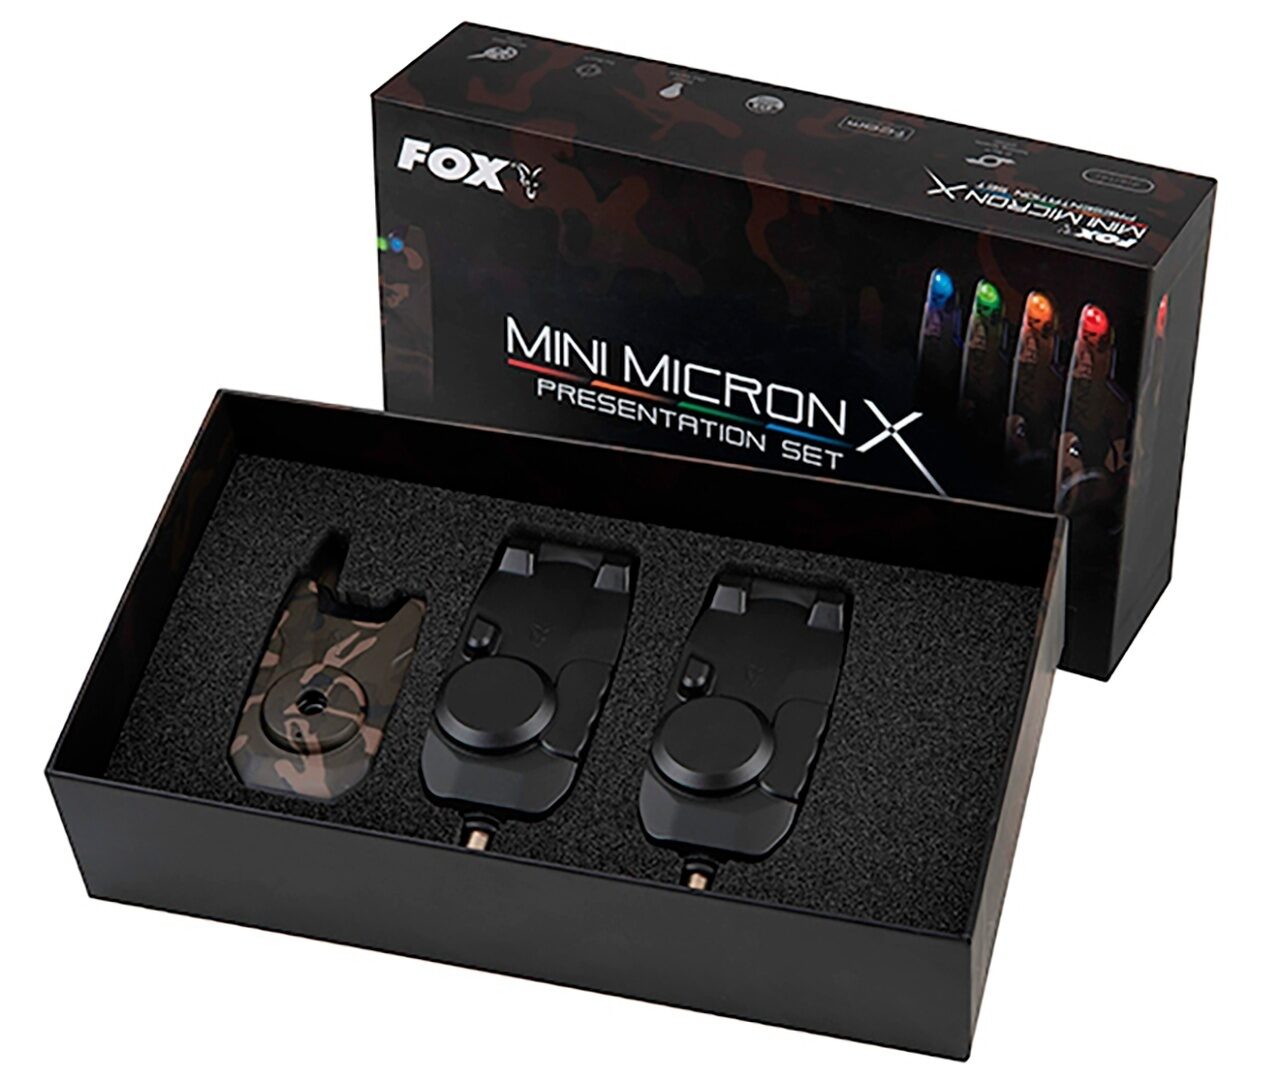 Набор сигнализаторов с пейджером Fox (Фокс) - Mini Micron X 2 Rod Ltd Edition Camo Set 2 + 1